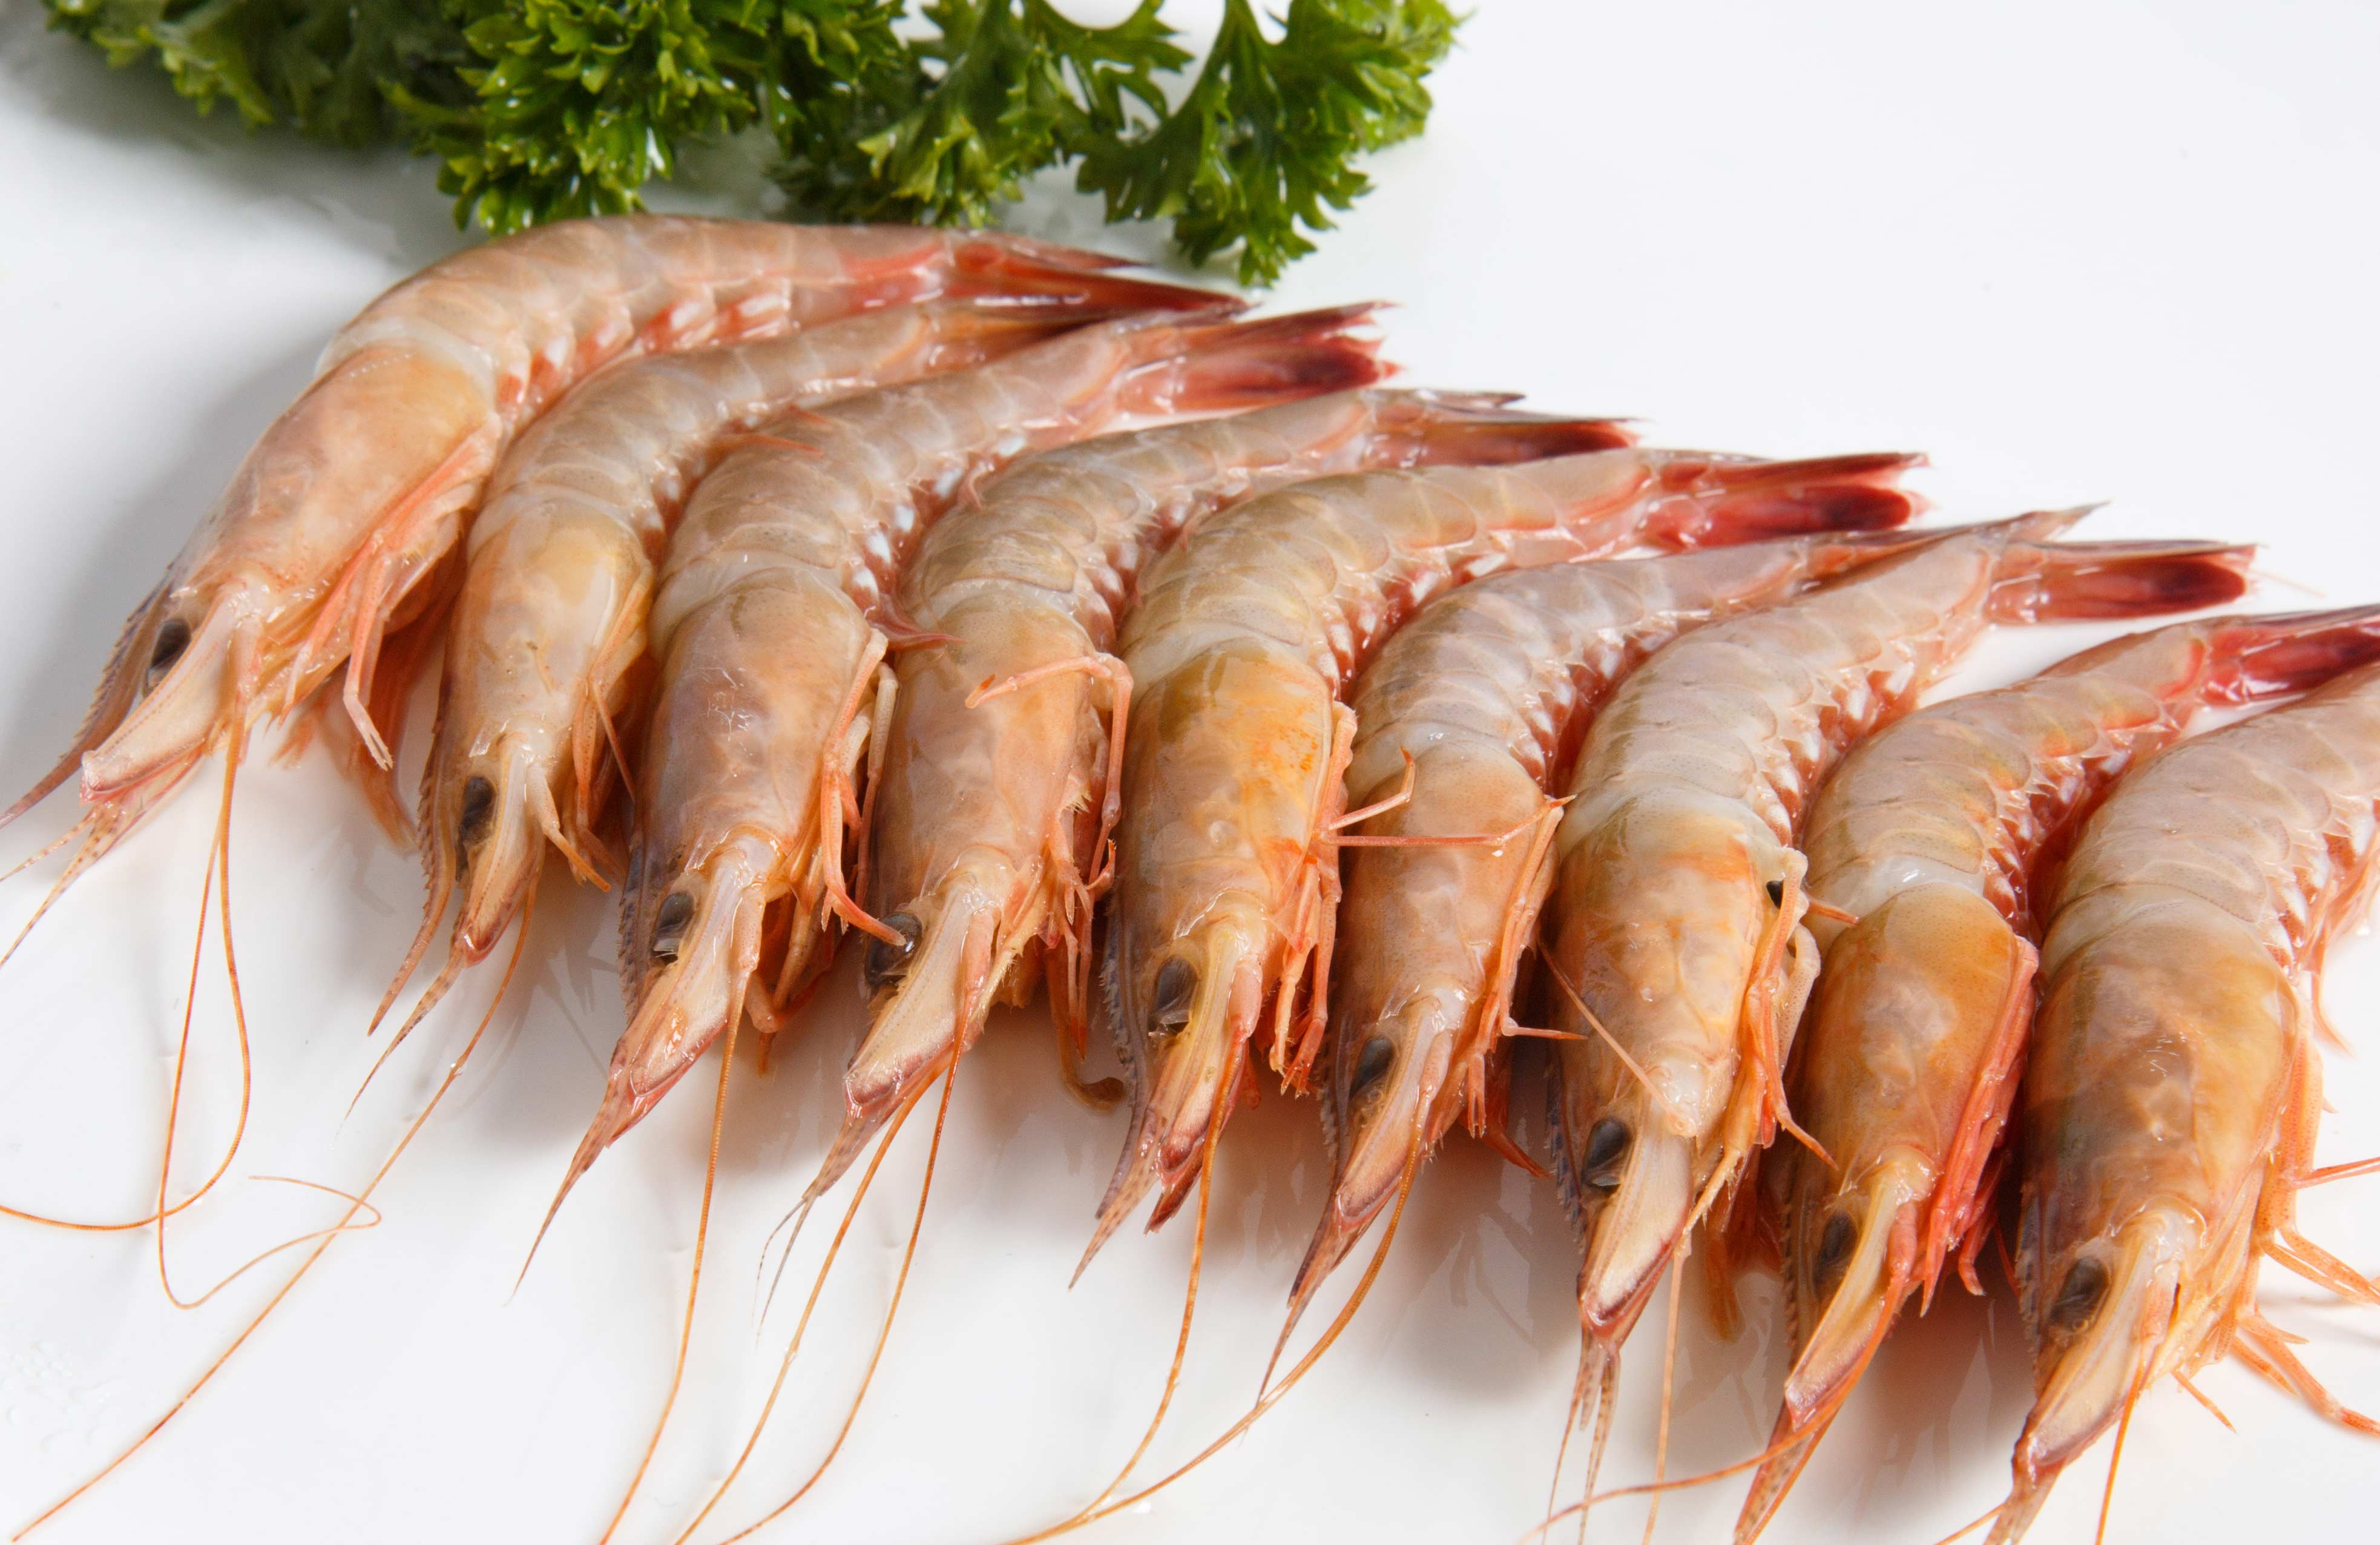 怎么区分买的虾是淡水虾还是海虾?不用尝味道从这2个方面看就可以了